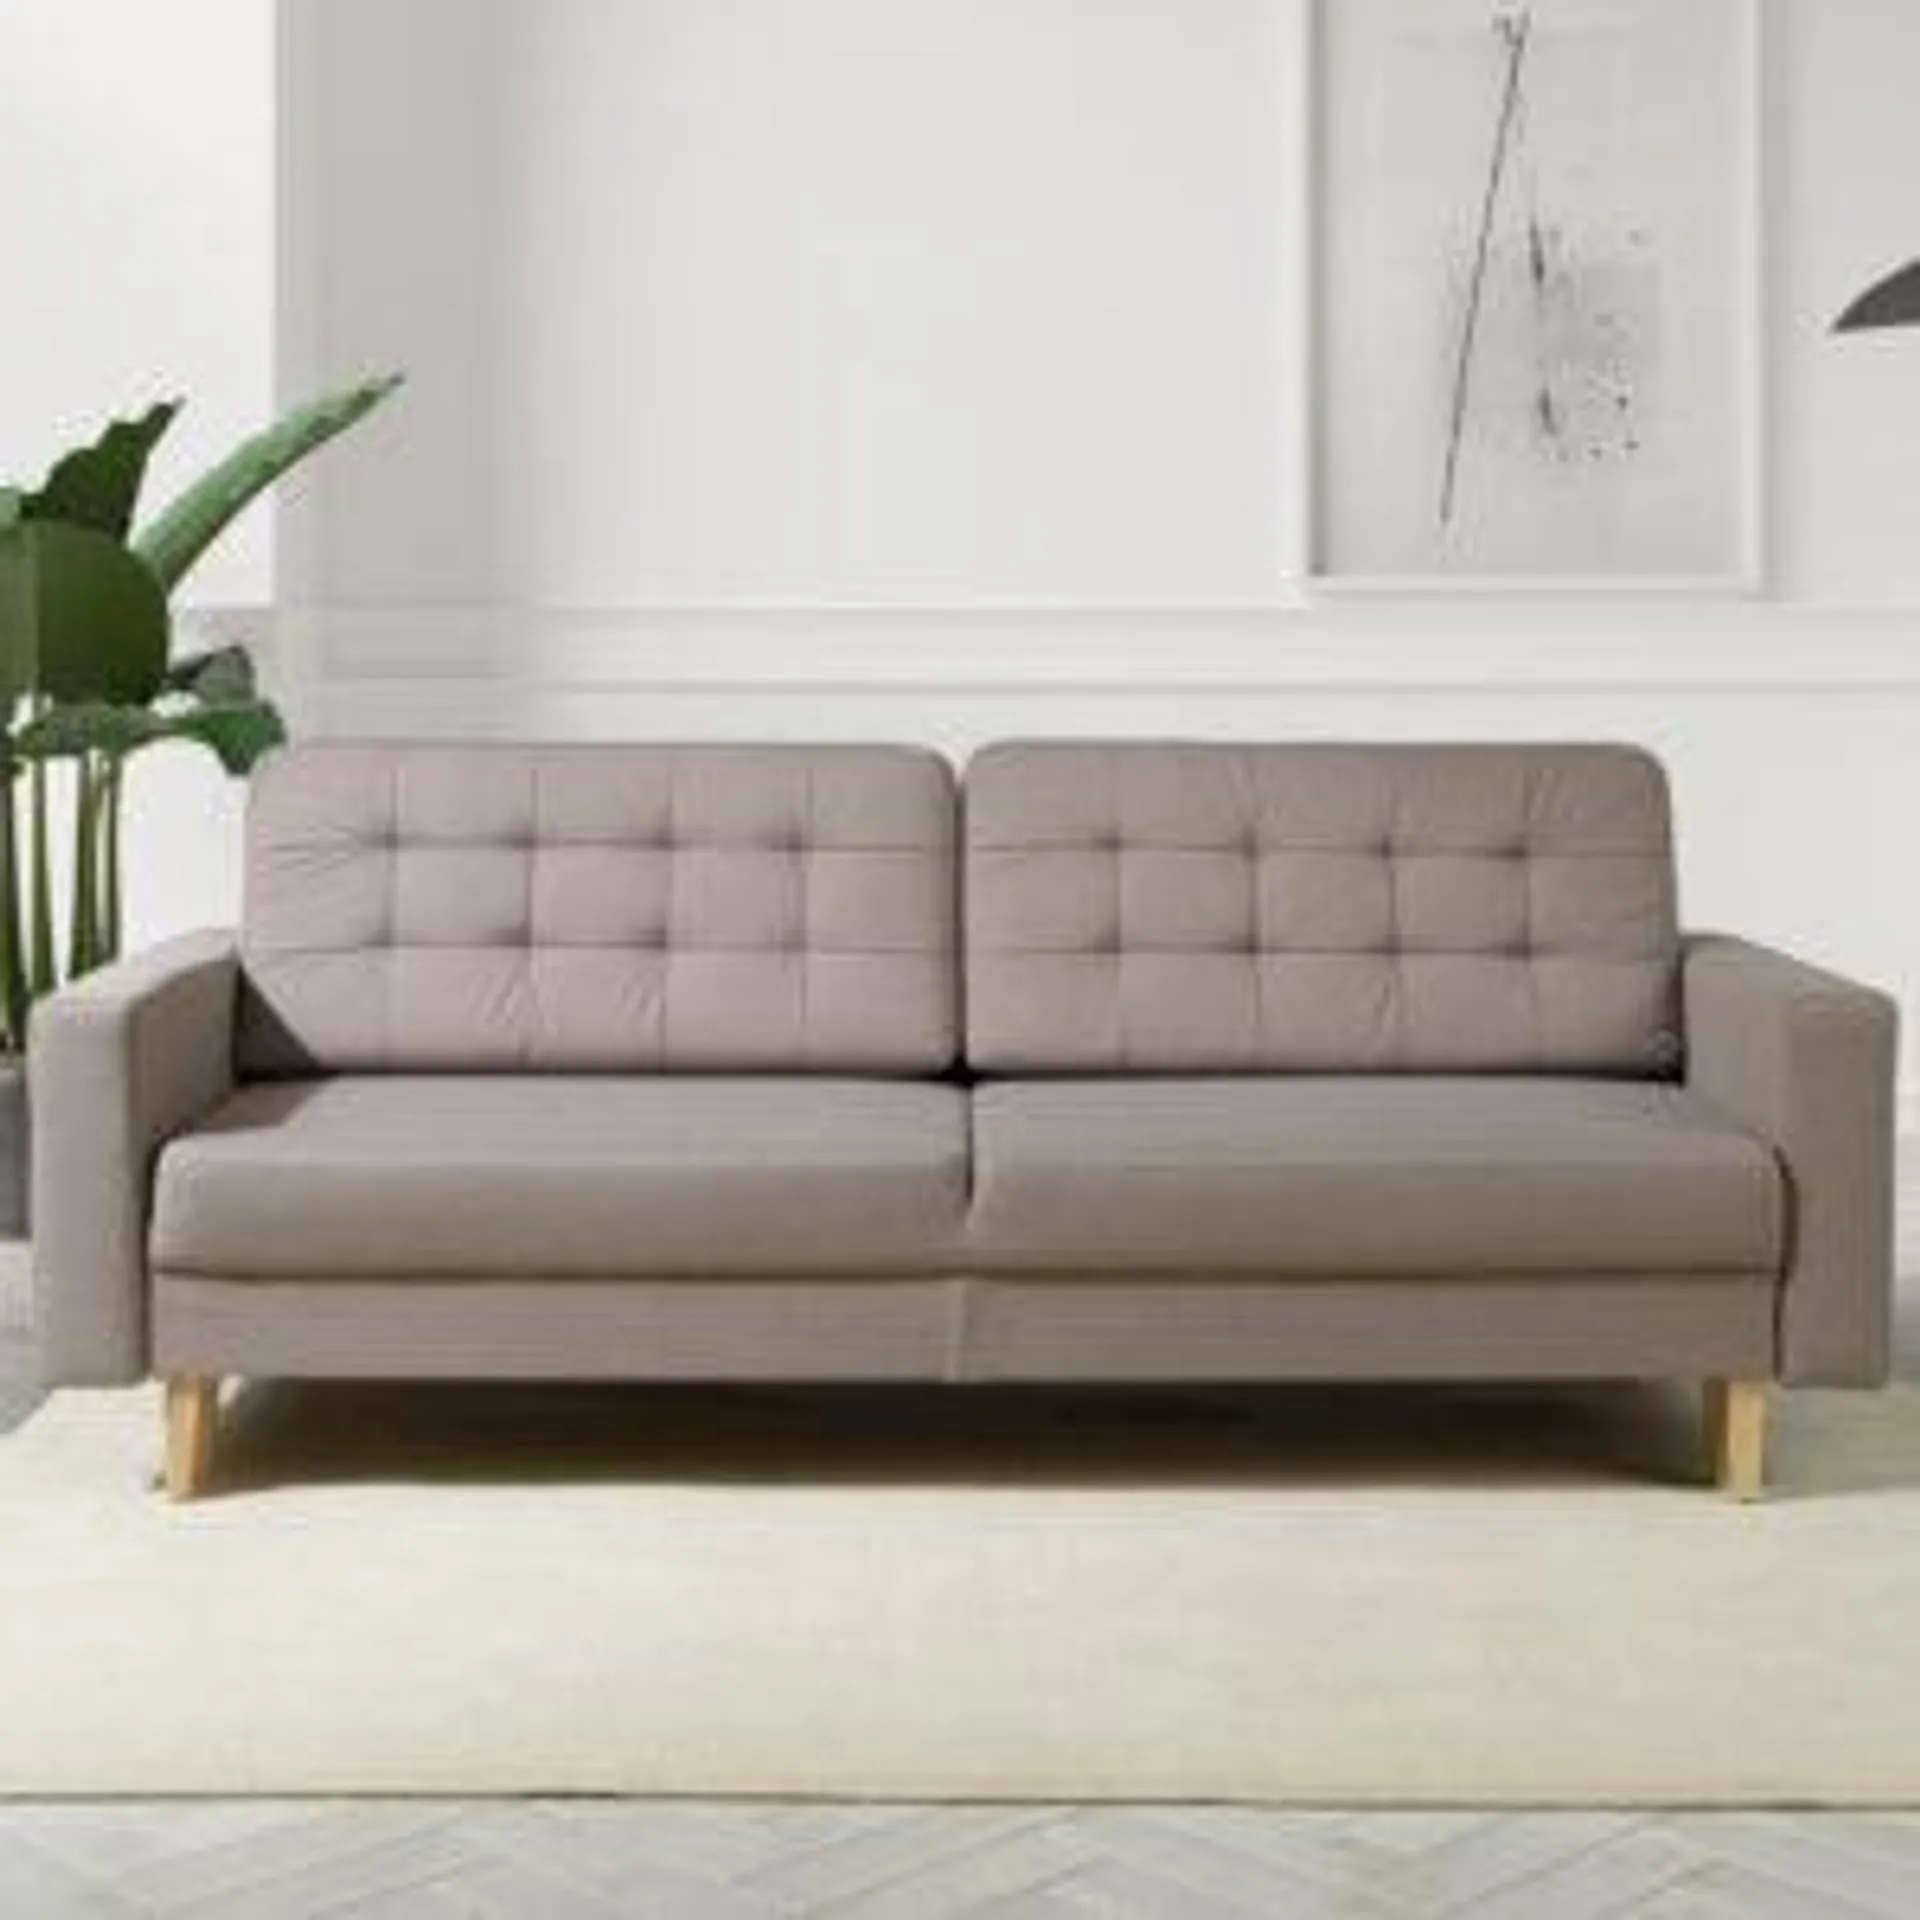 MOON sofa DL